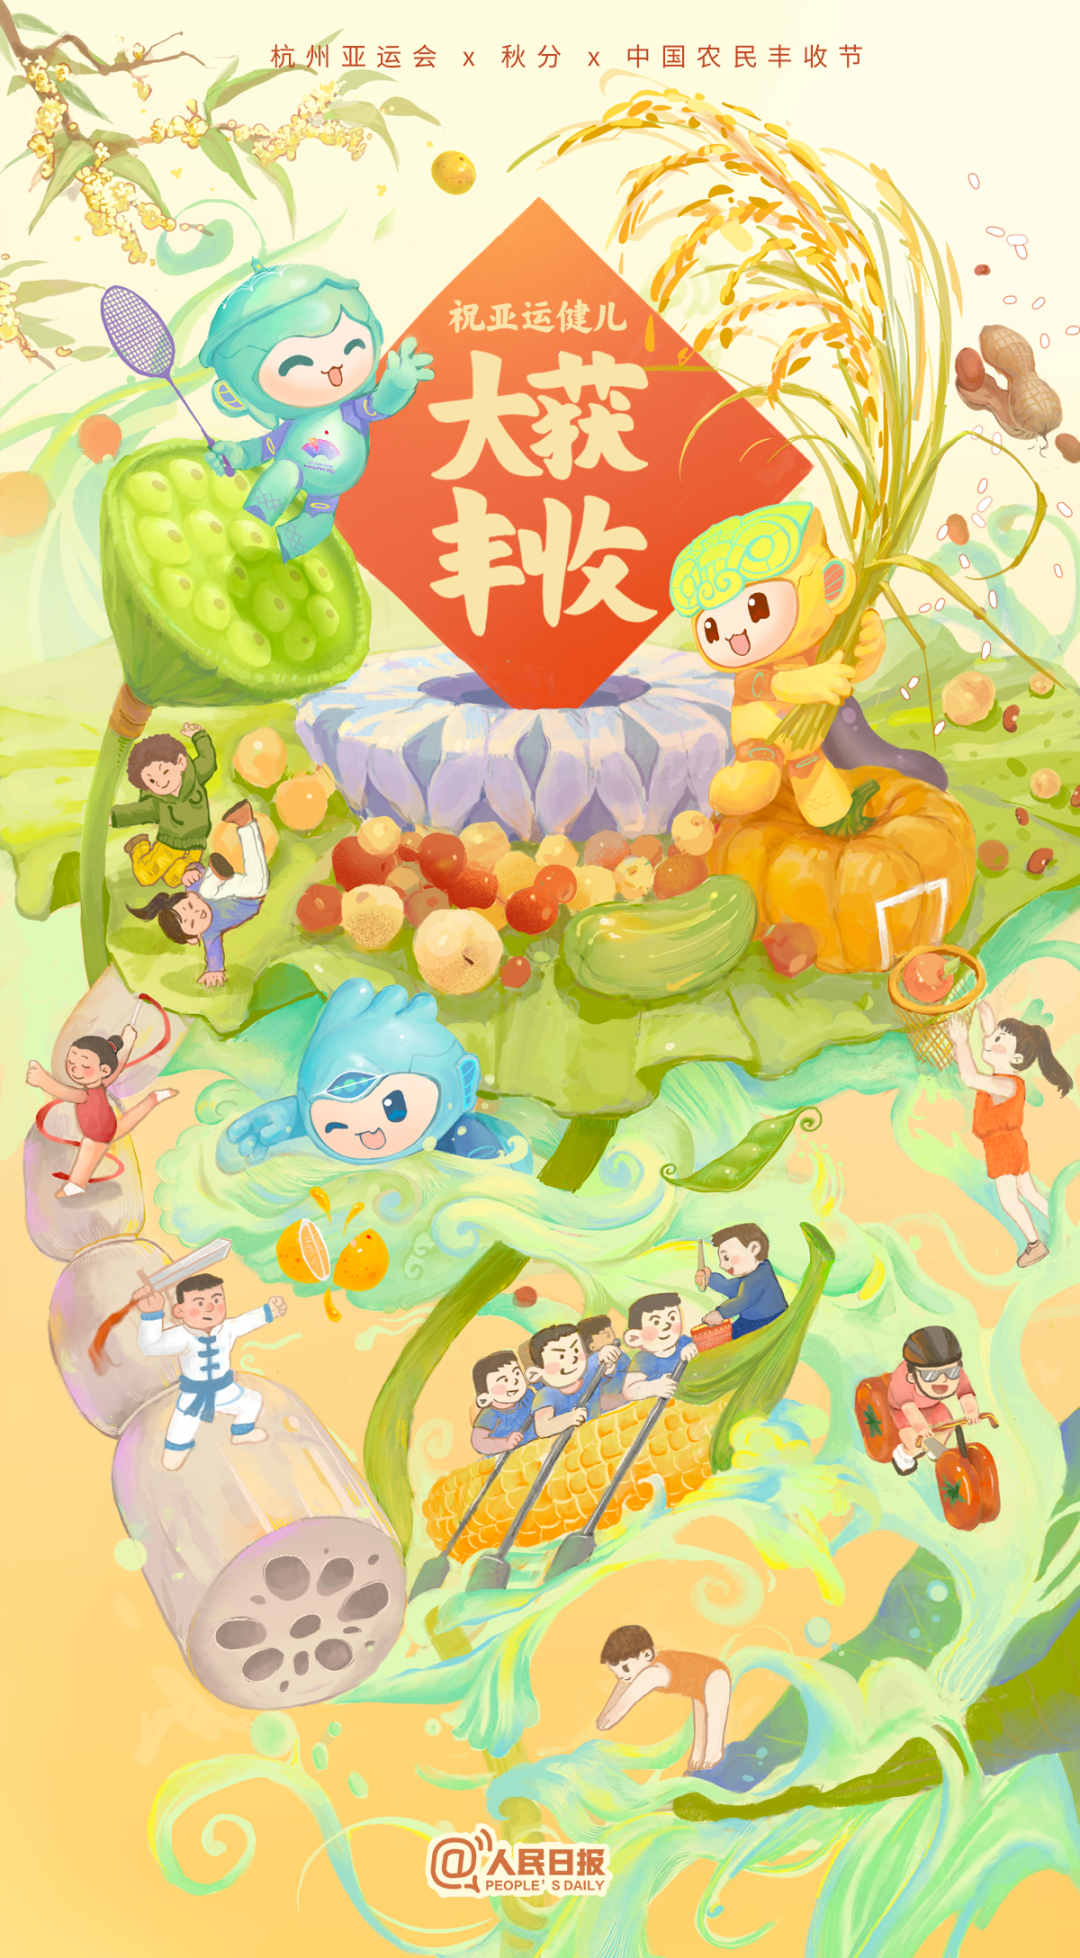 杭州亚运会×秋分×中国农民丰收节！祝亚运健儿大获丰收！